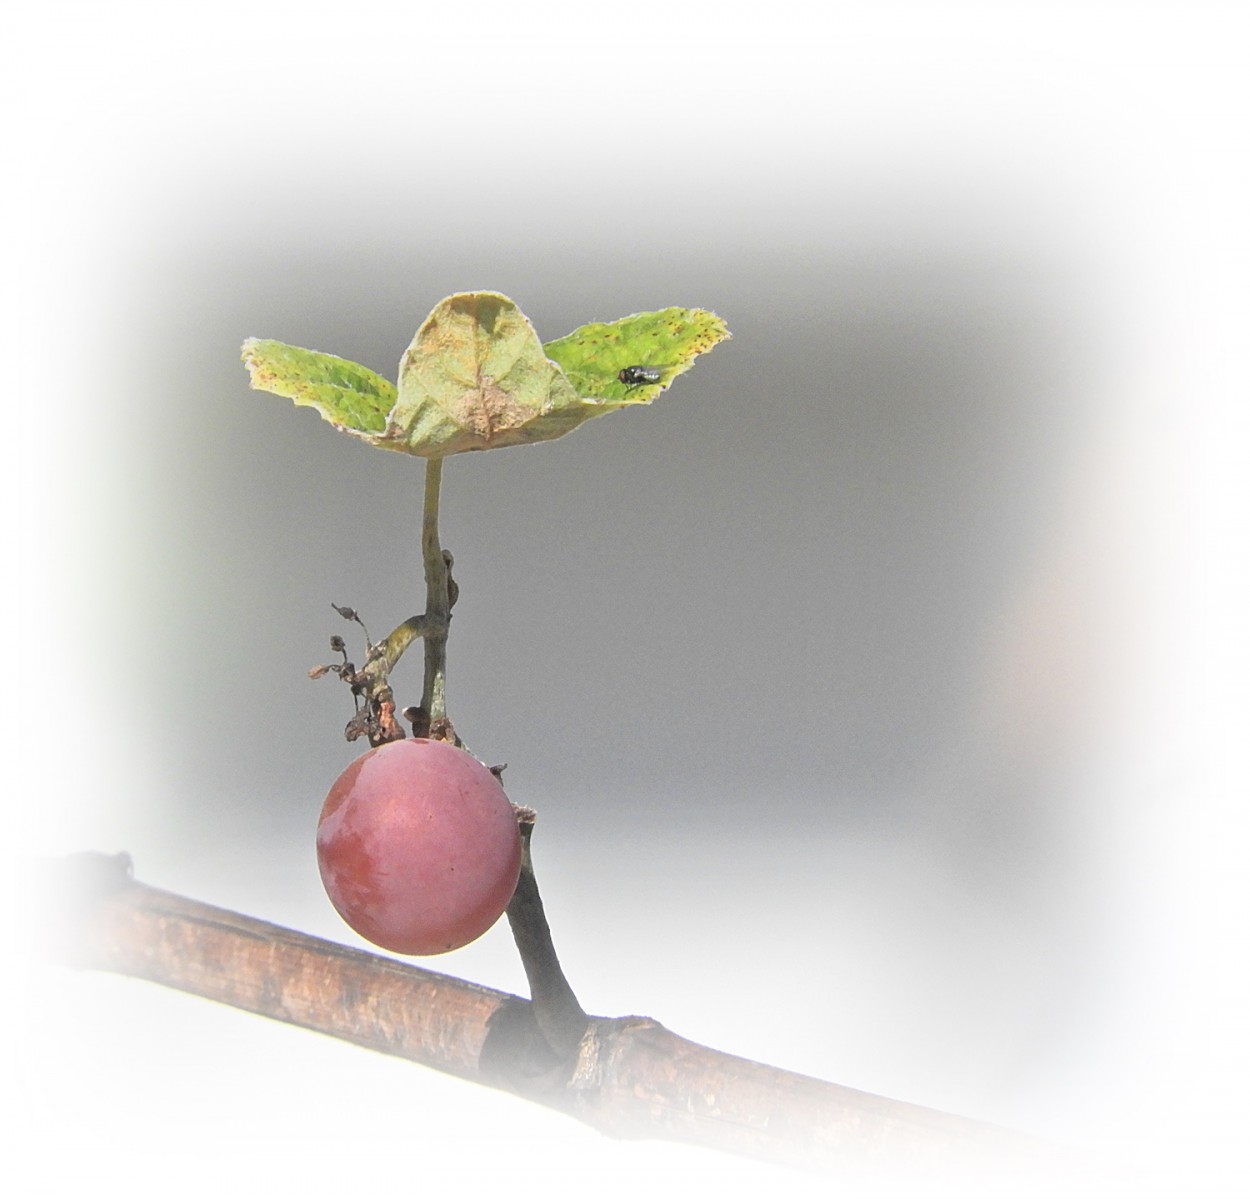 "Uma releitura, mas ontem a uva j no estava l!" de Decio Badari